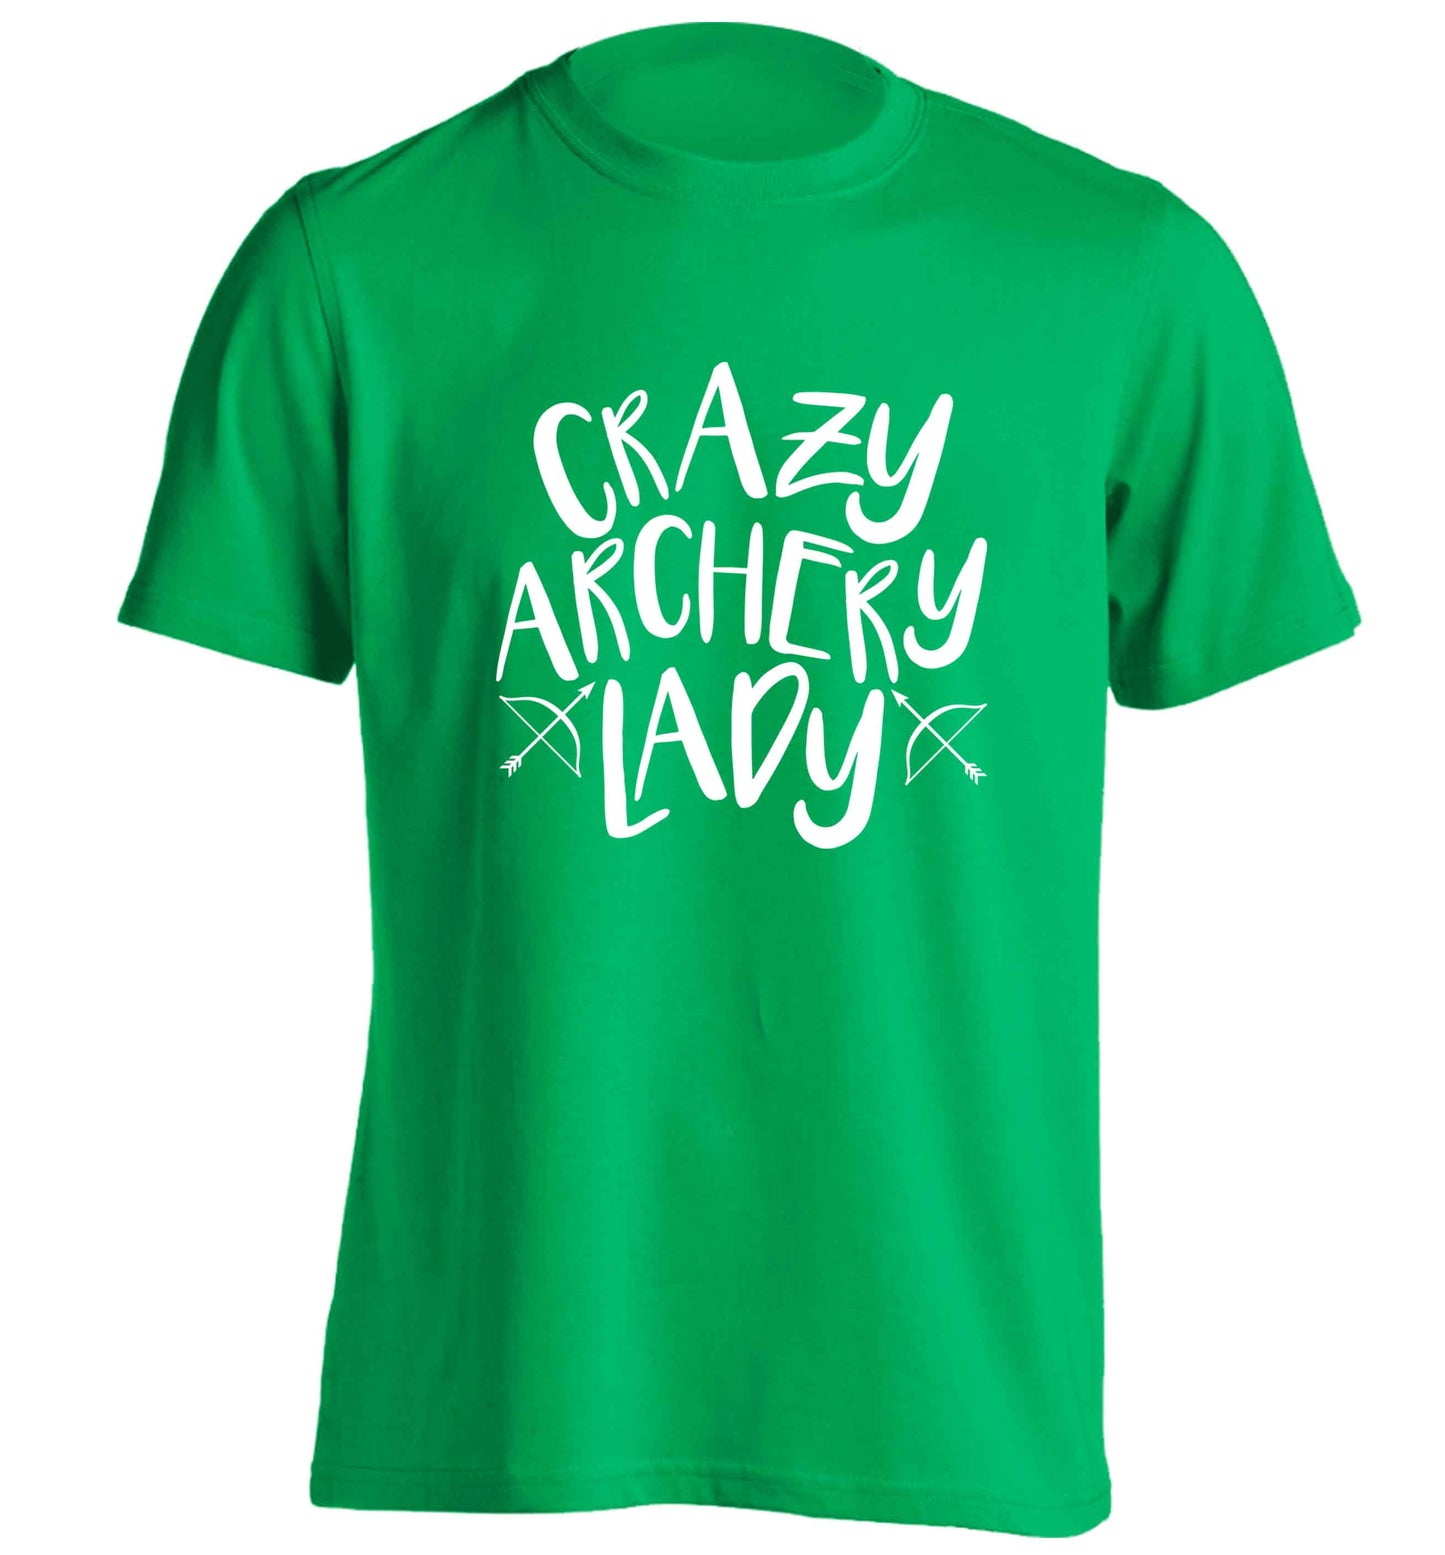 Crazy archery lady adults unisex green Tshirt 2XL